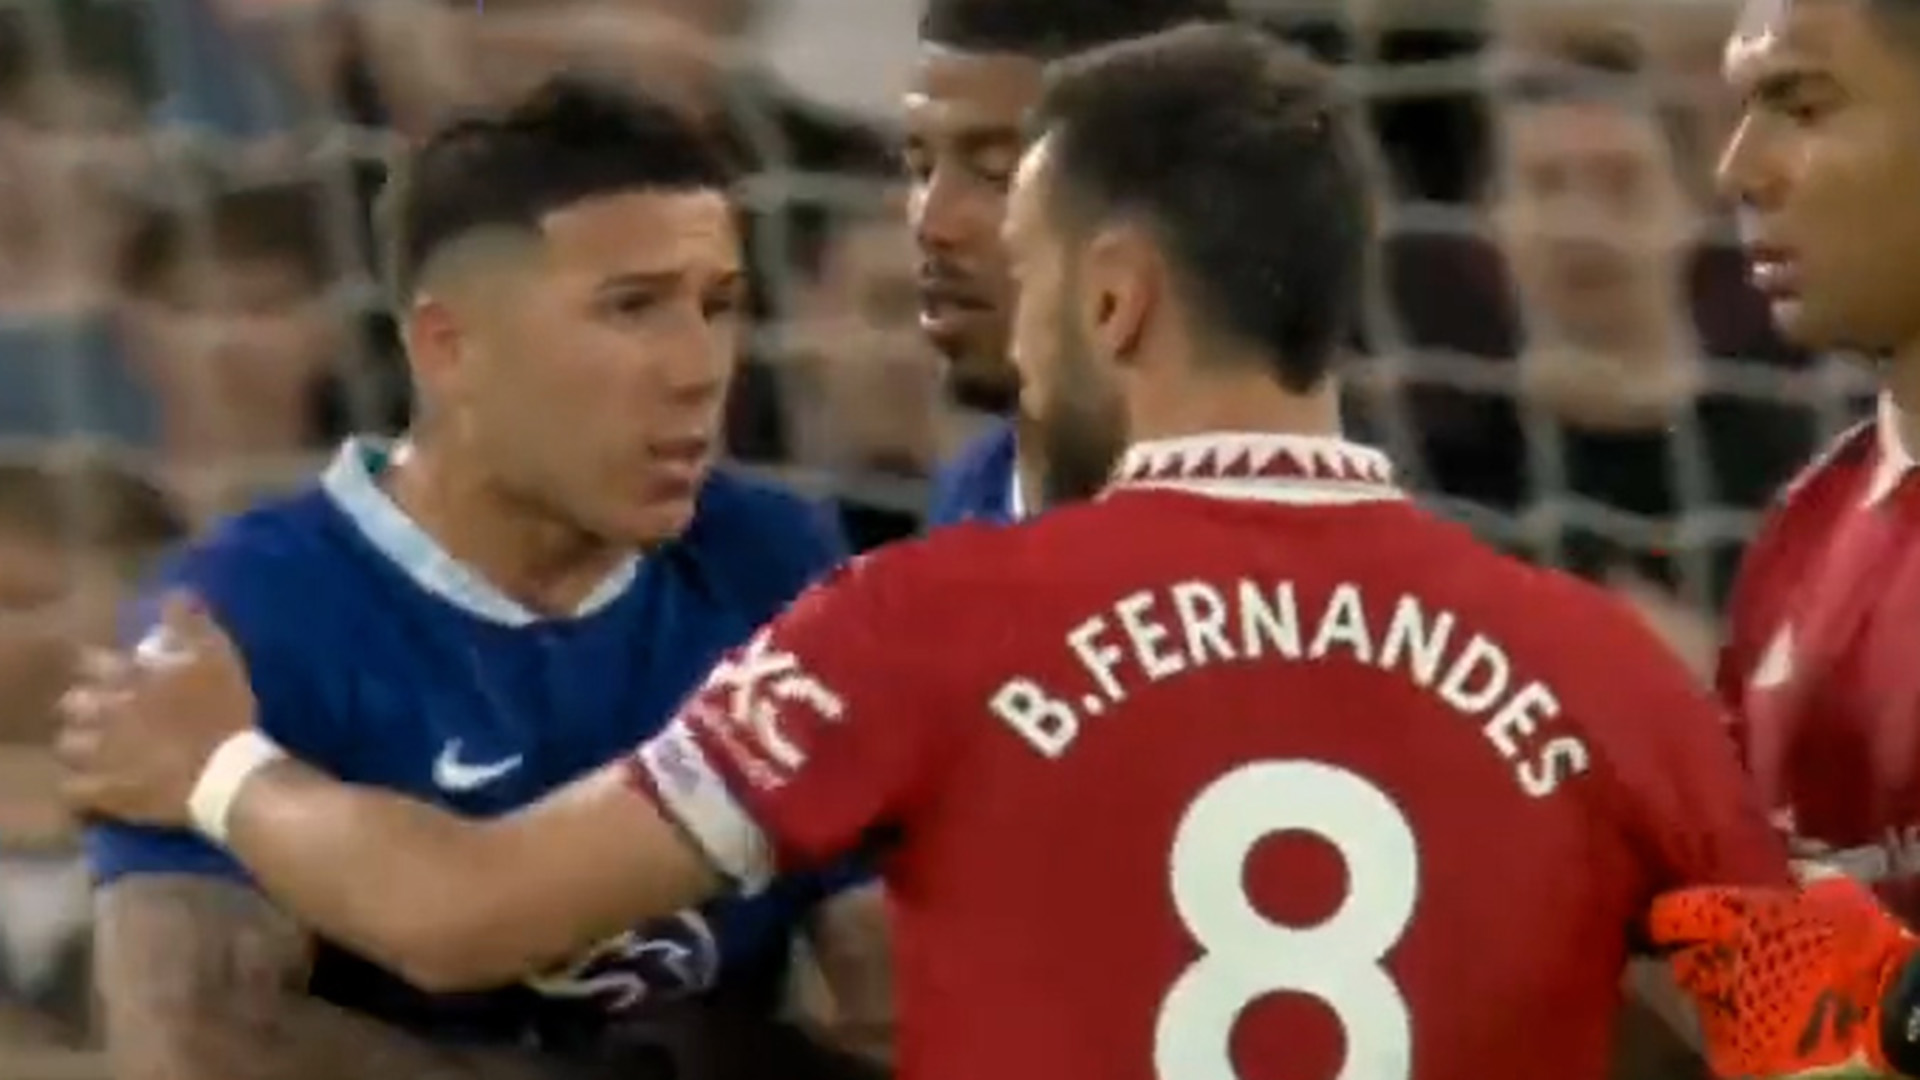 Un reclamo, insultos y empujones: el duro cruce entre Enzo Fernández y Bruno Fernandes en la goleada del Manchester United al Chelsea